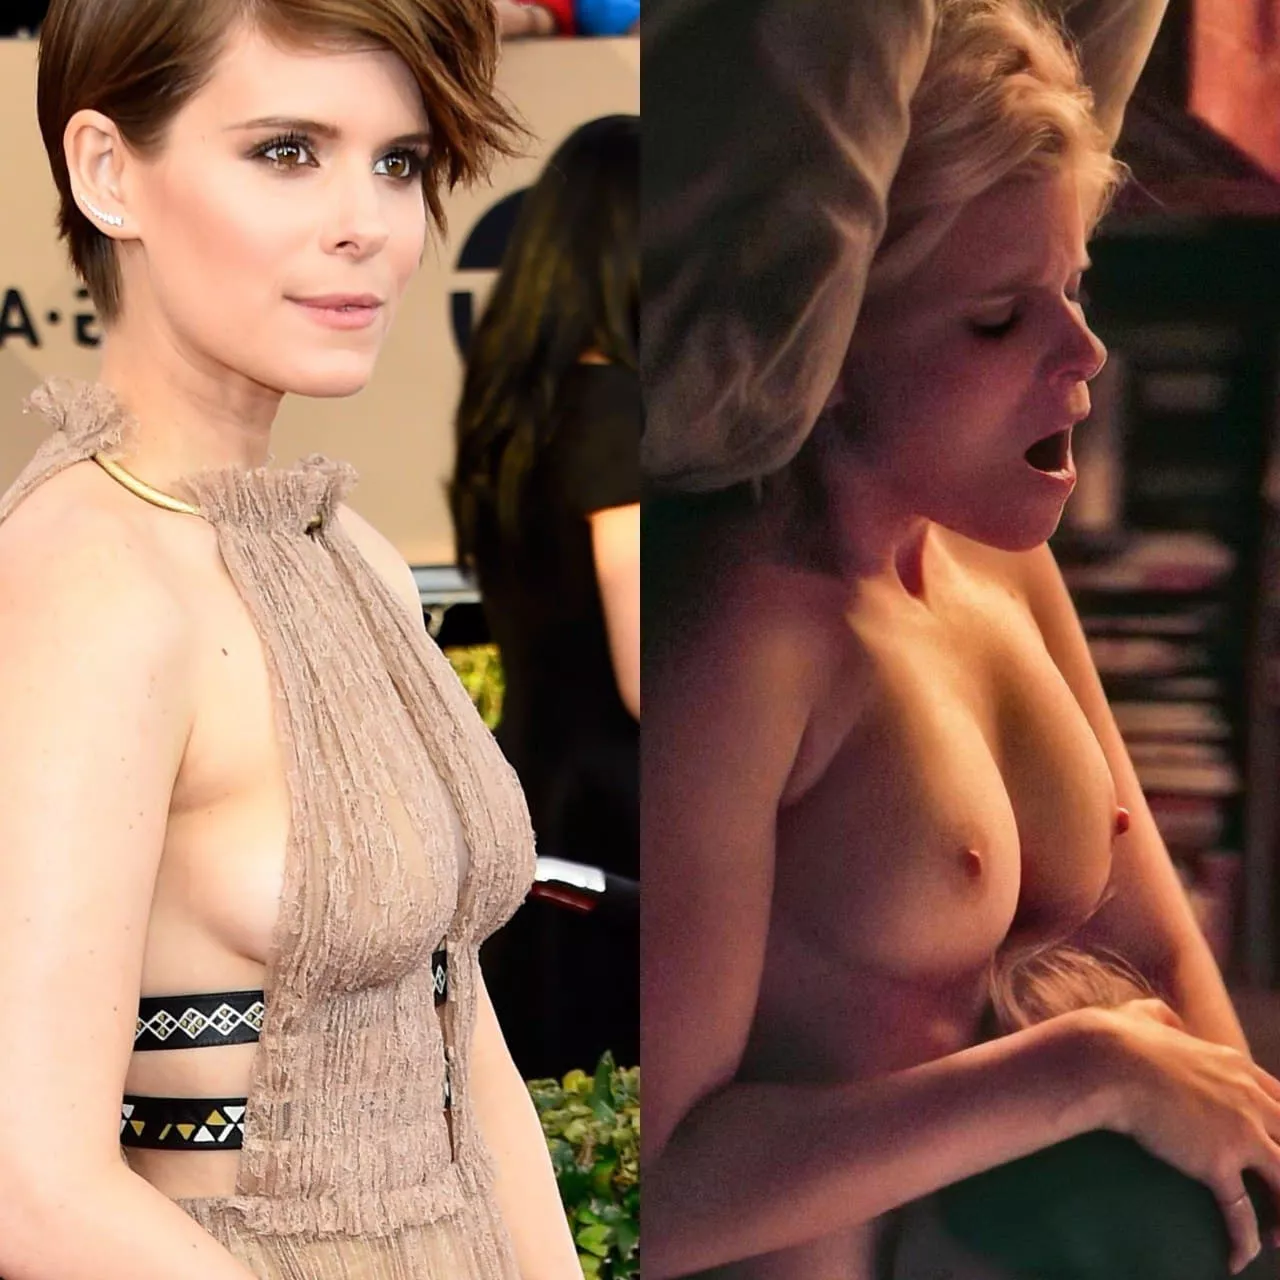 Kate mara boobs